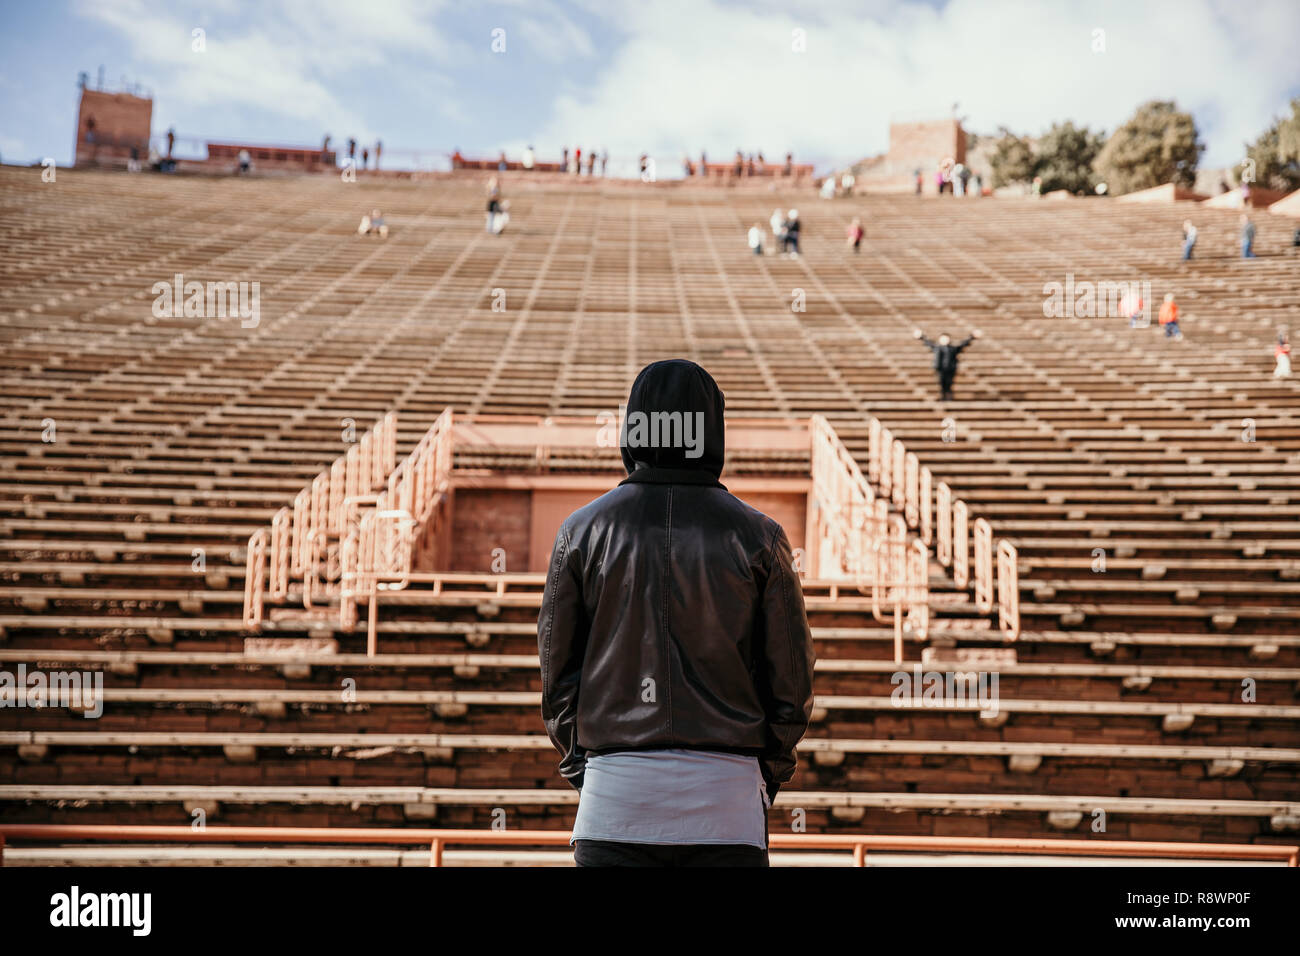 Symmetrische Porträt der Person, die auf der Bühne Träumen, während mit Blick auf das Stadion steht am Amphitheater im Freien Konzert Music Hall außerhalb Stockfoto